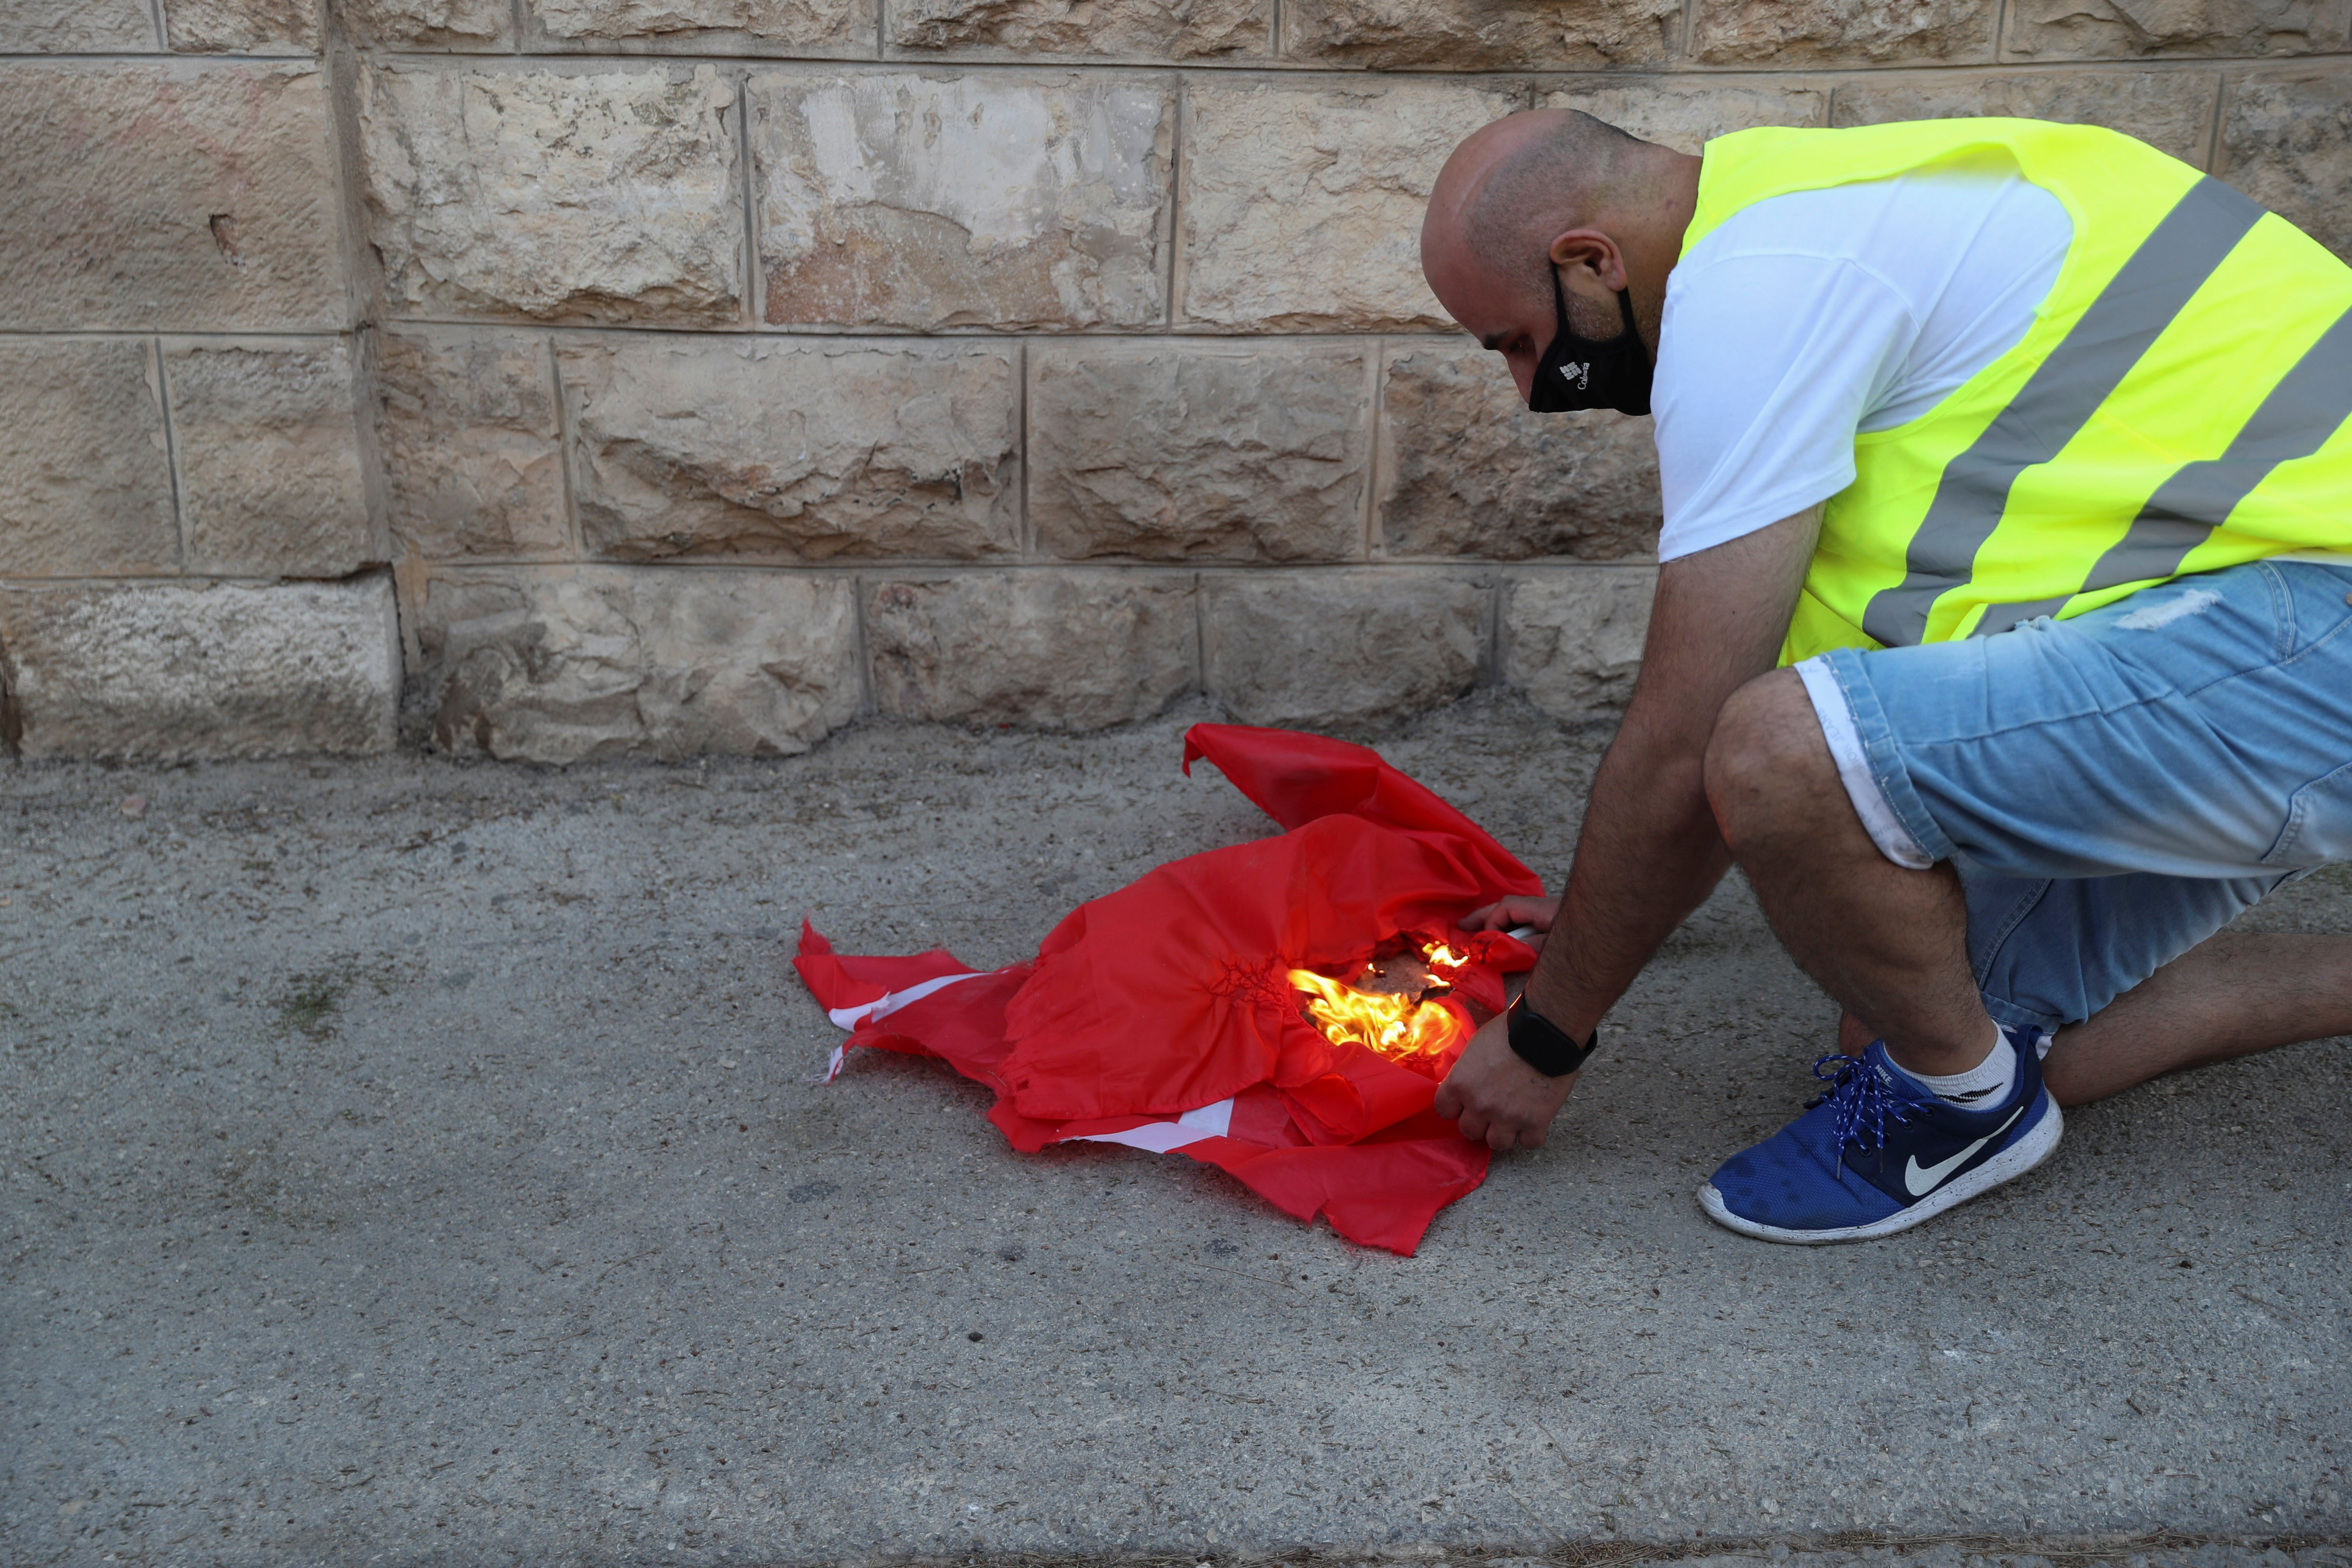 İsrailli gruptan, Türk bayrağına alçak saldırı #3